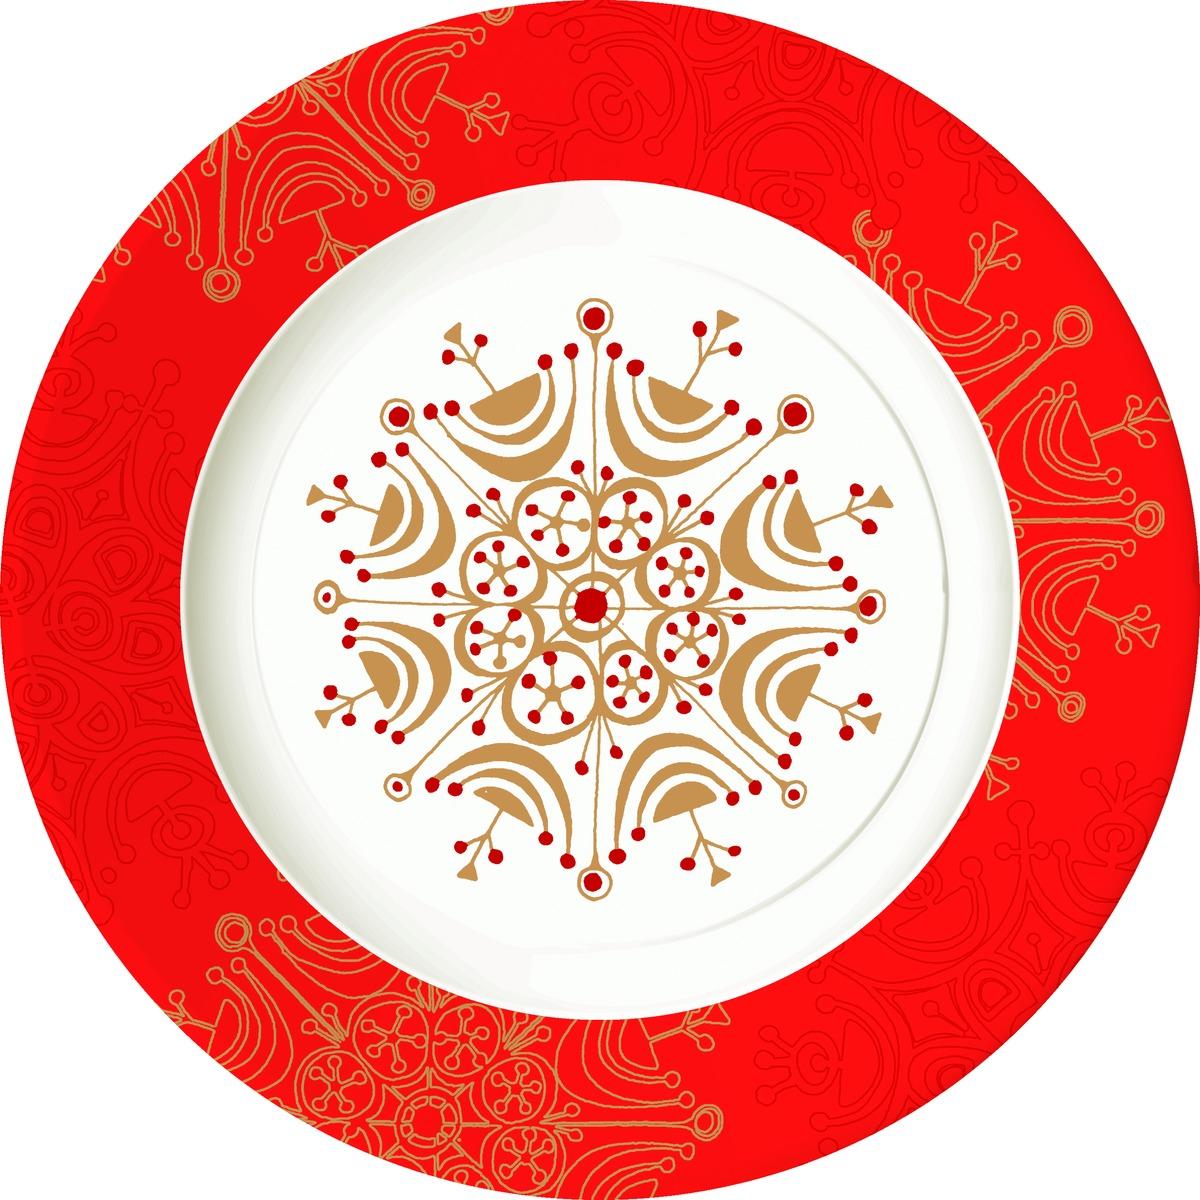 Lot de 10 assiettes rondes en carton - Diamètre 23 cm - Rouge, Blanc